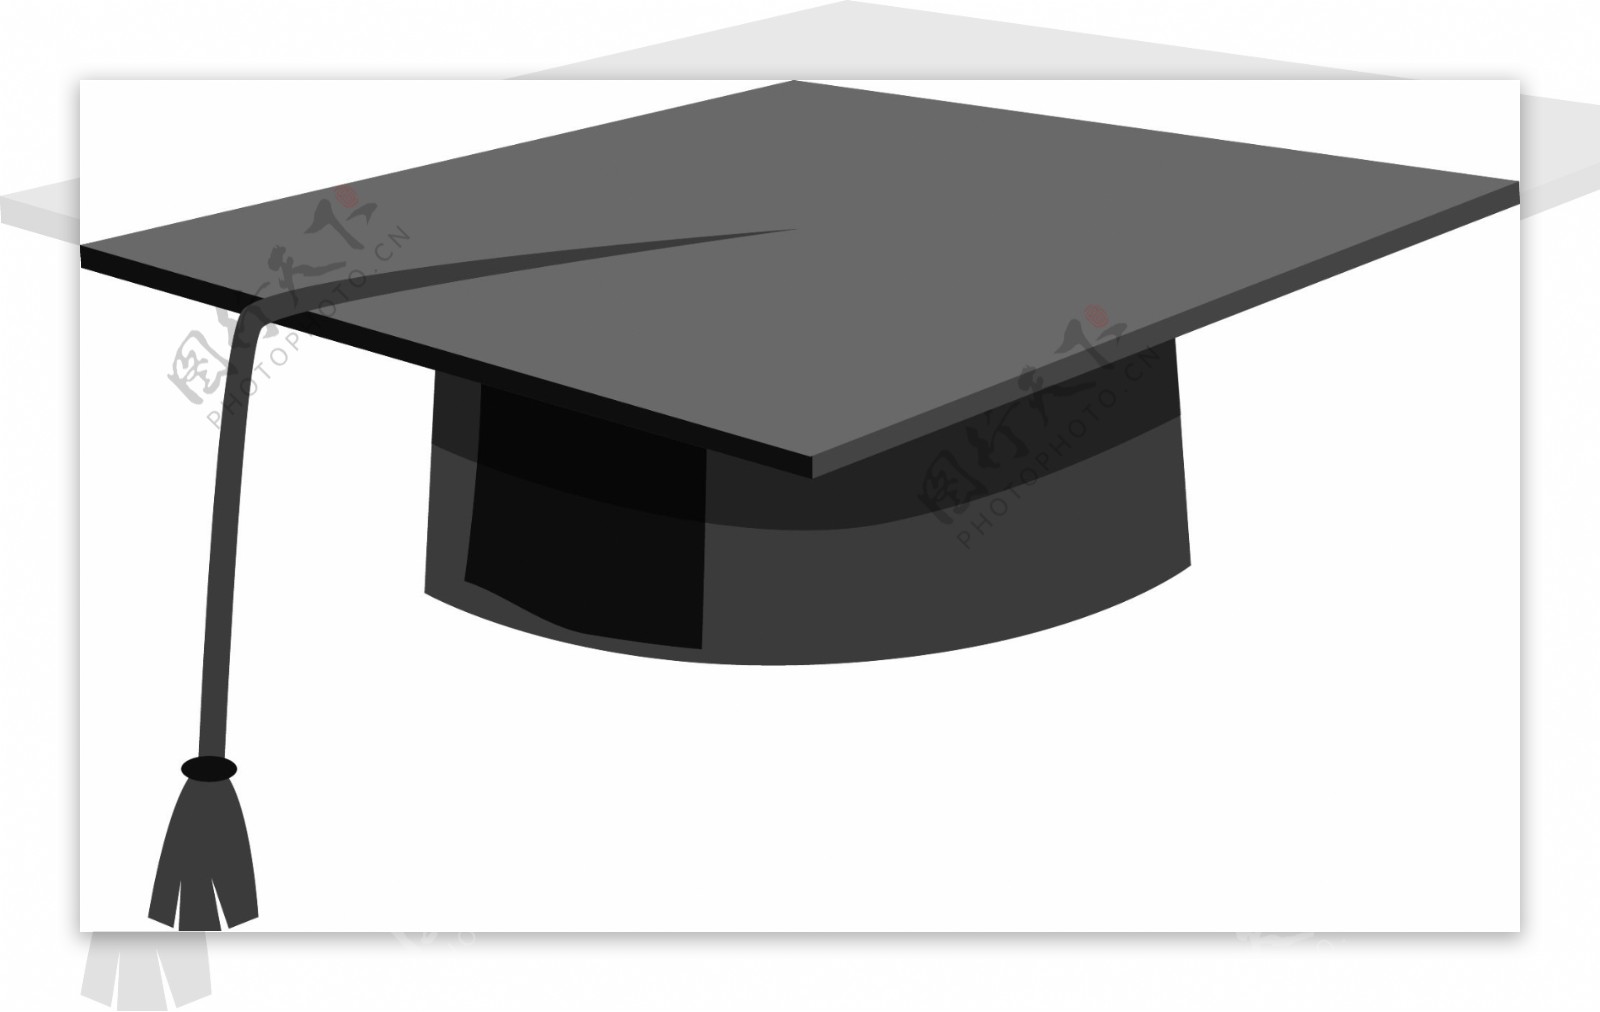 畢業季卡通學士帽和卷軸組合PSD圖案素材免費下載 - 尺寸2000 × 2000px - 圖形ID401364468 - Lovepik